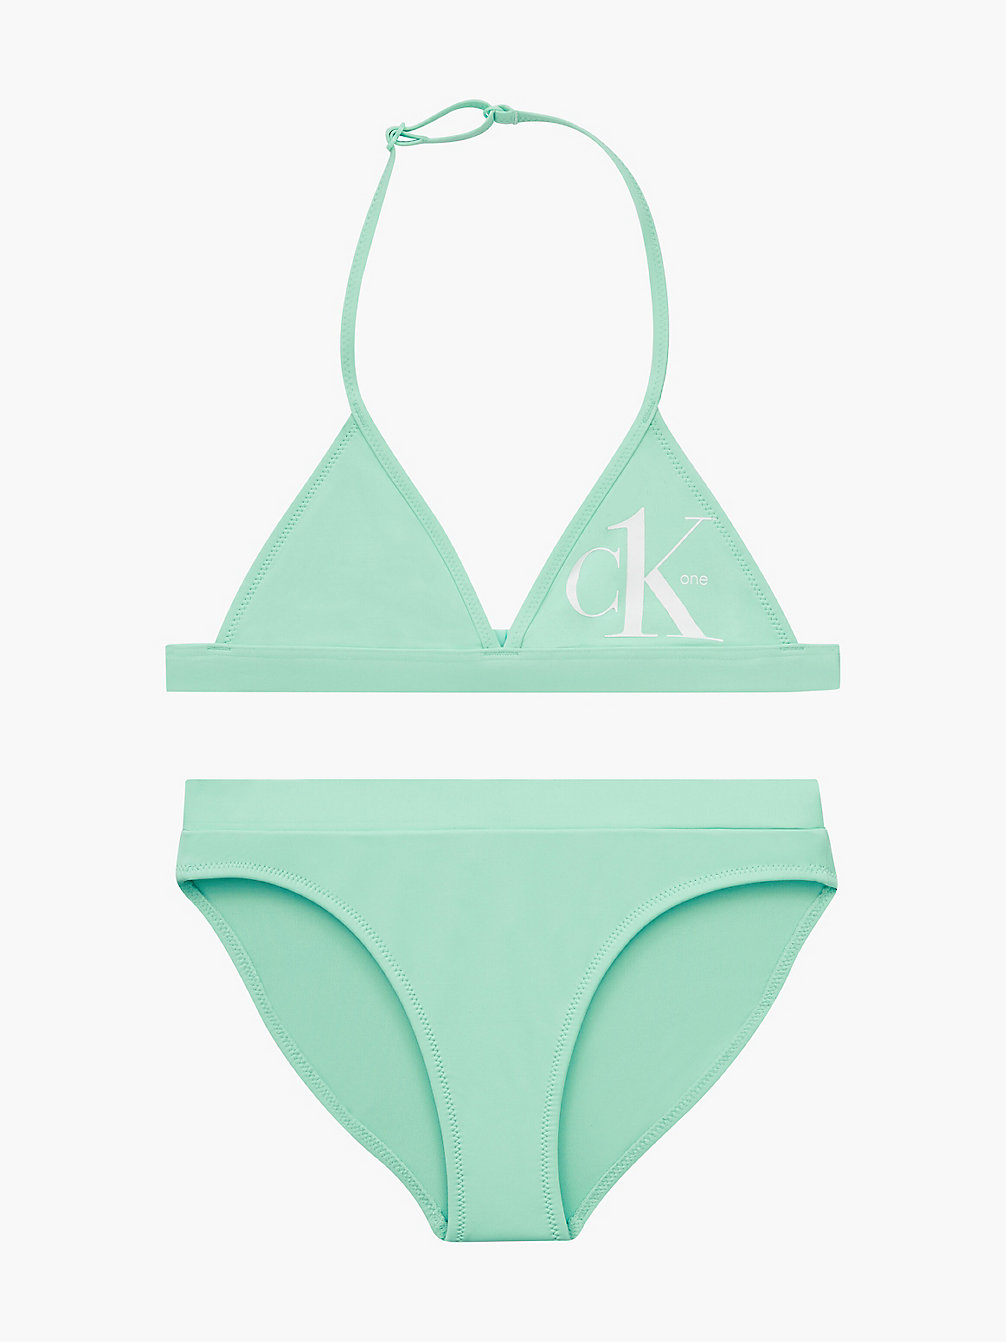 CLEAR LAGOON Bikini-Set Mit Triangel-Top Für Mädchen - CK One undefined Maedchen Calvin Klein